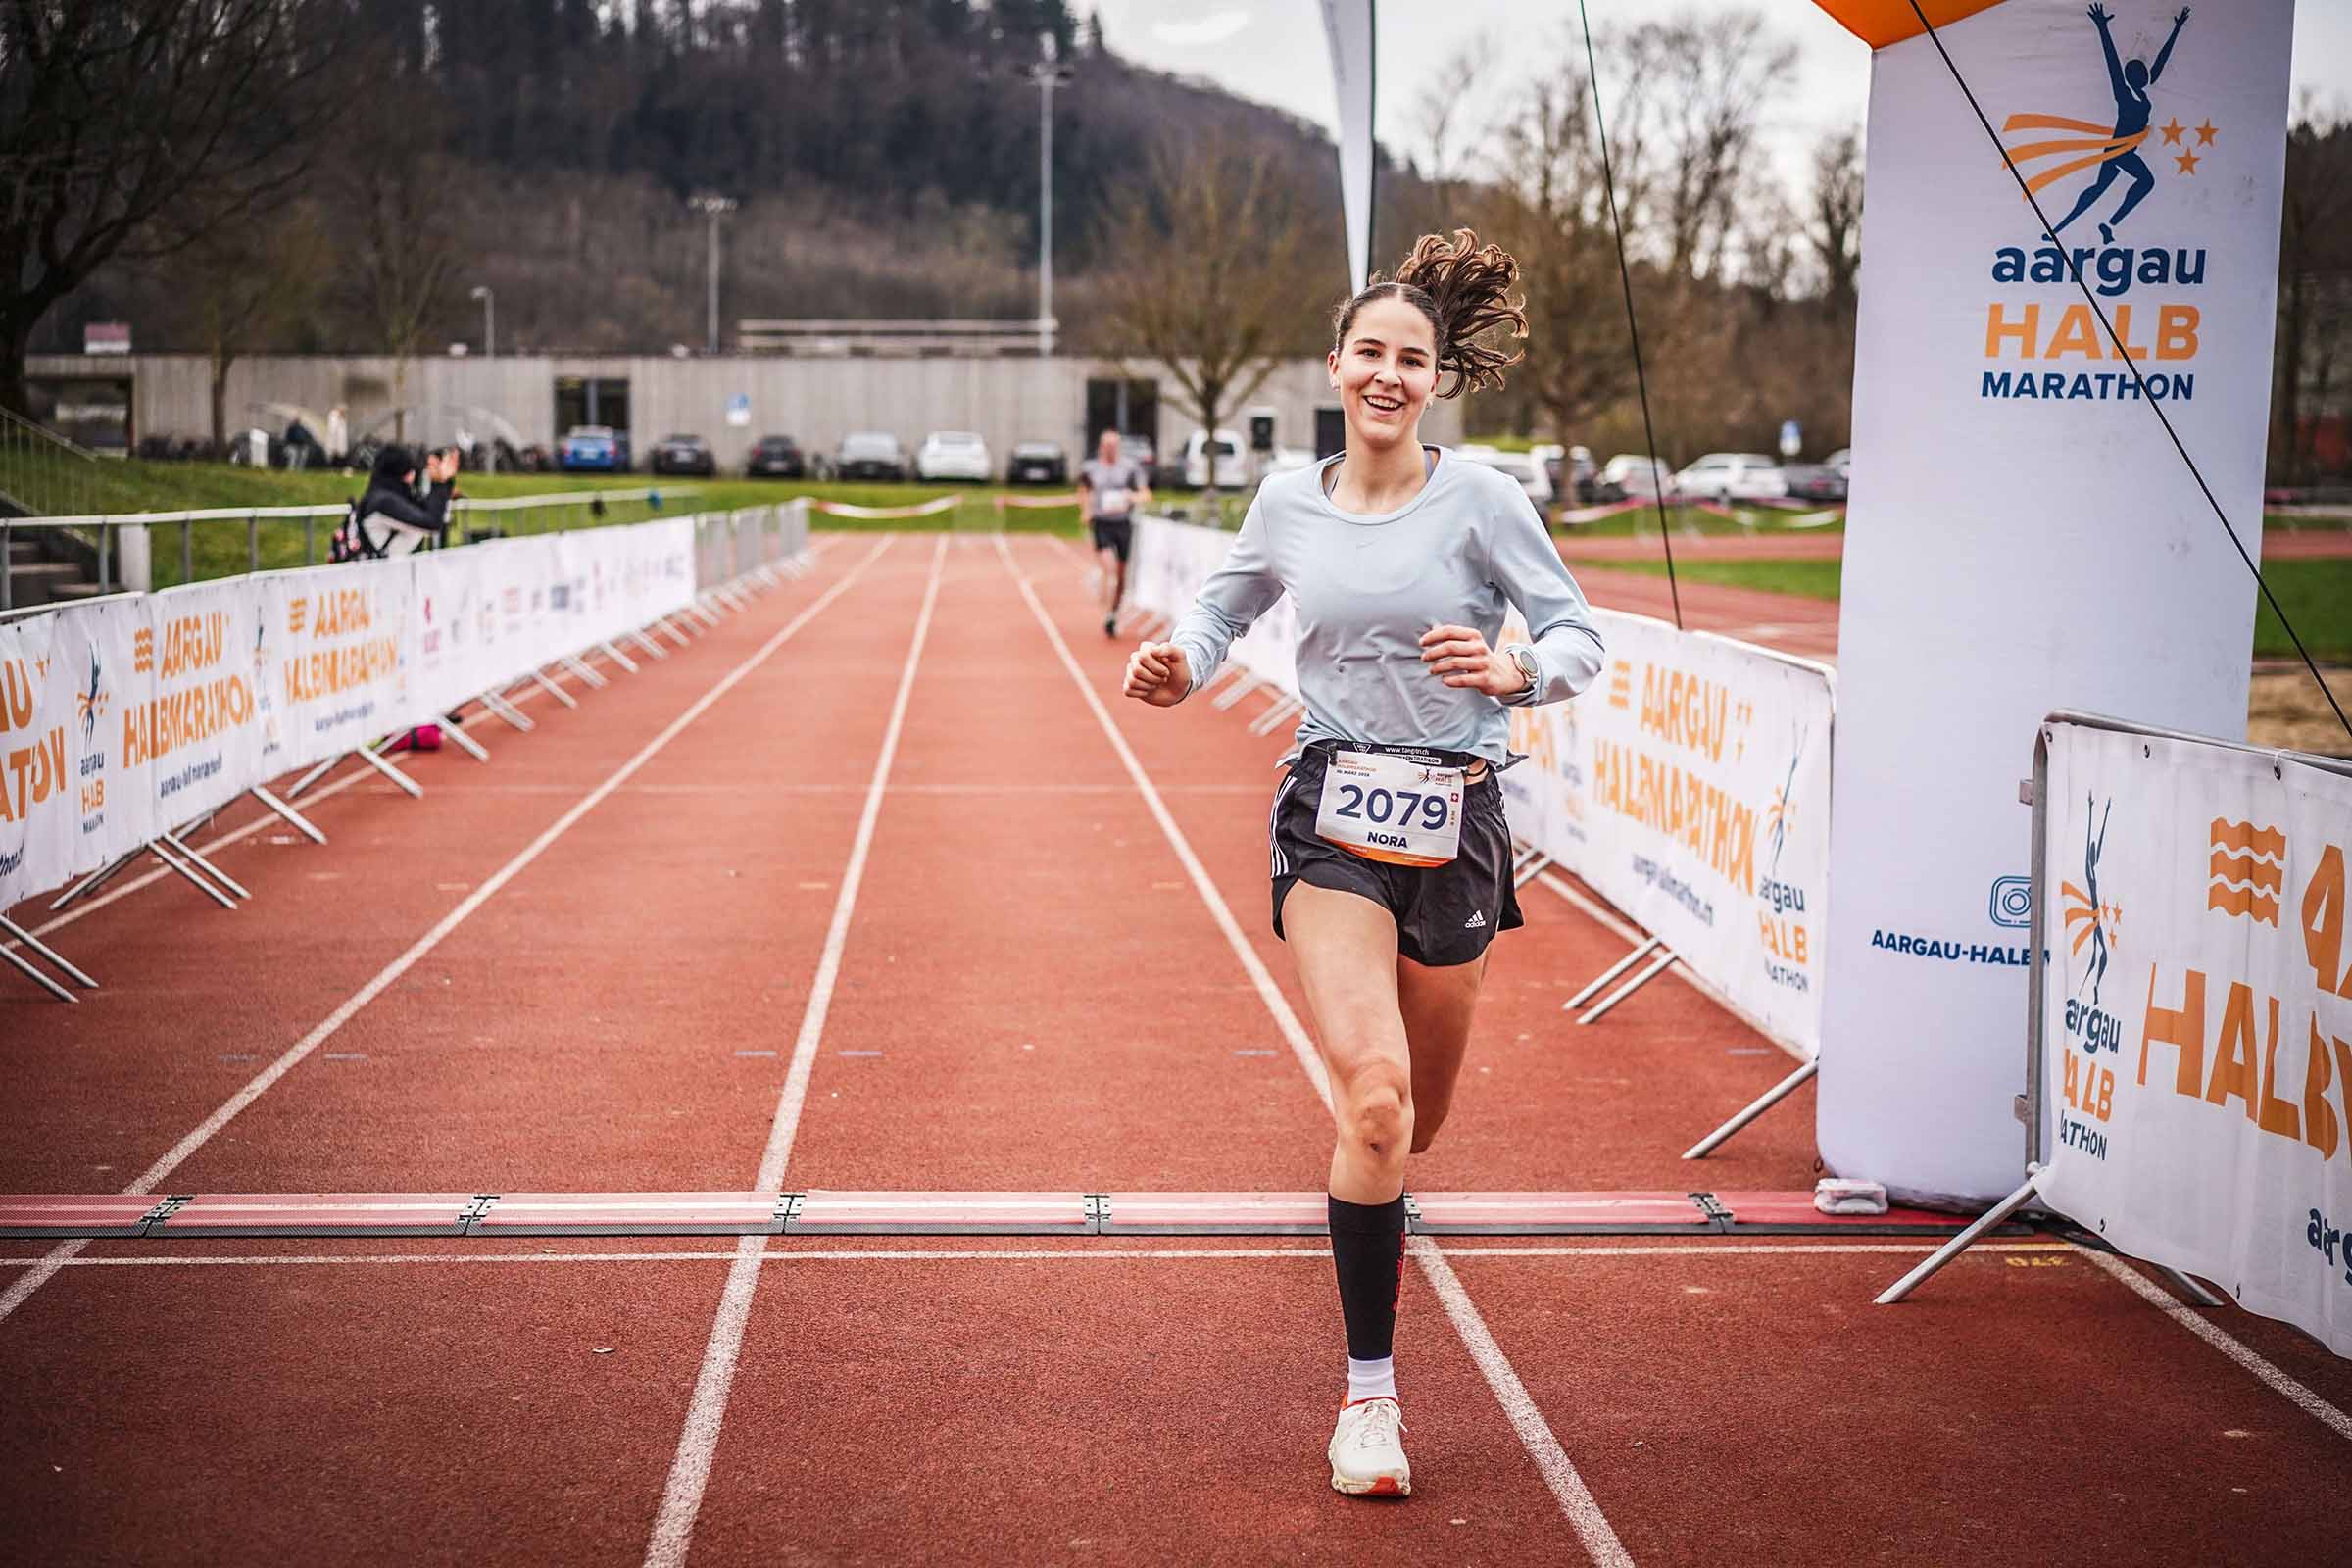 female runner at finish line smiling